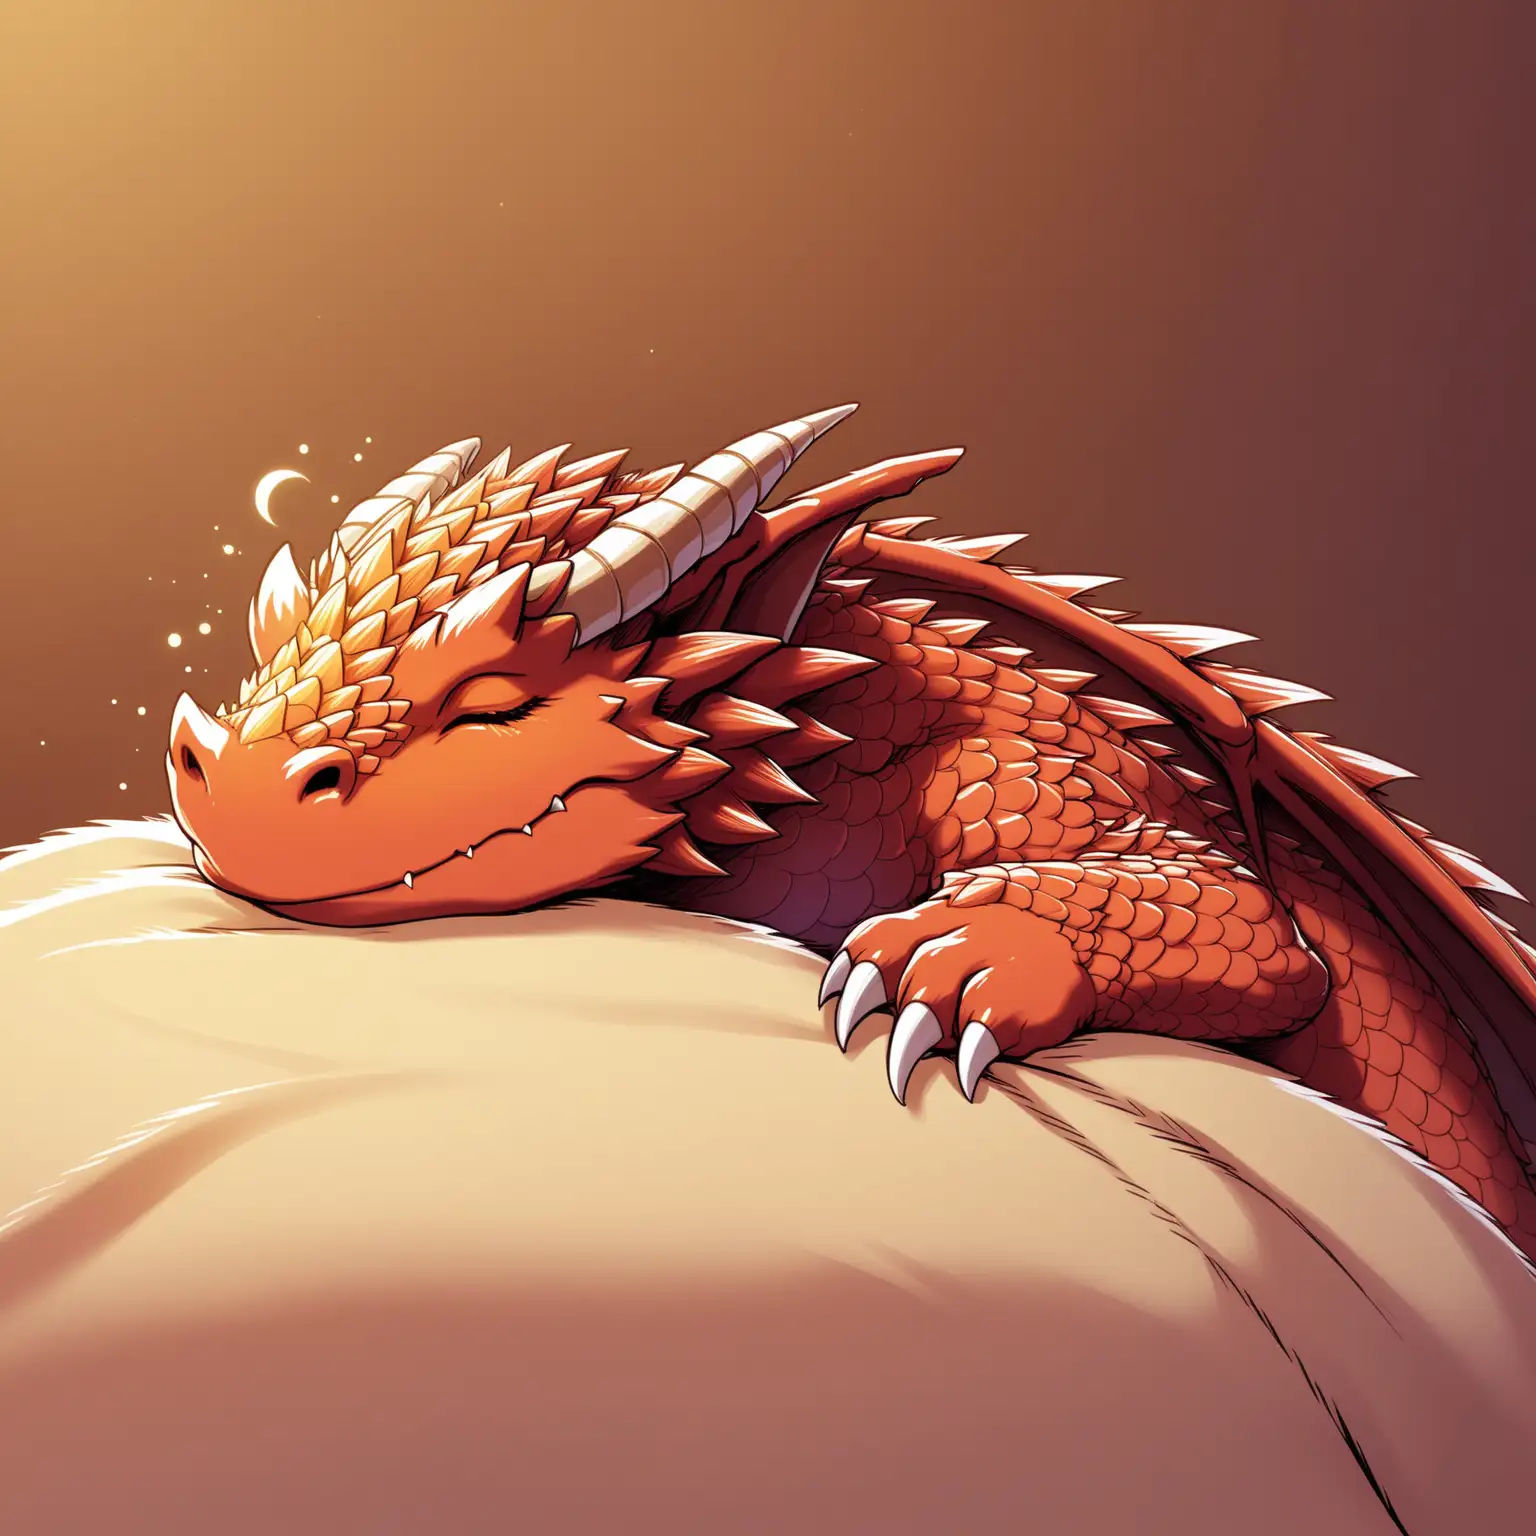 A DND dragon sleeping